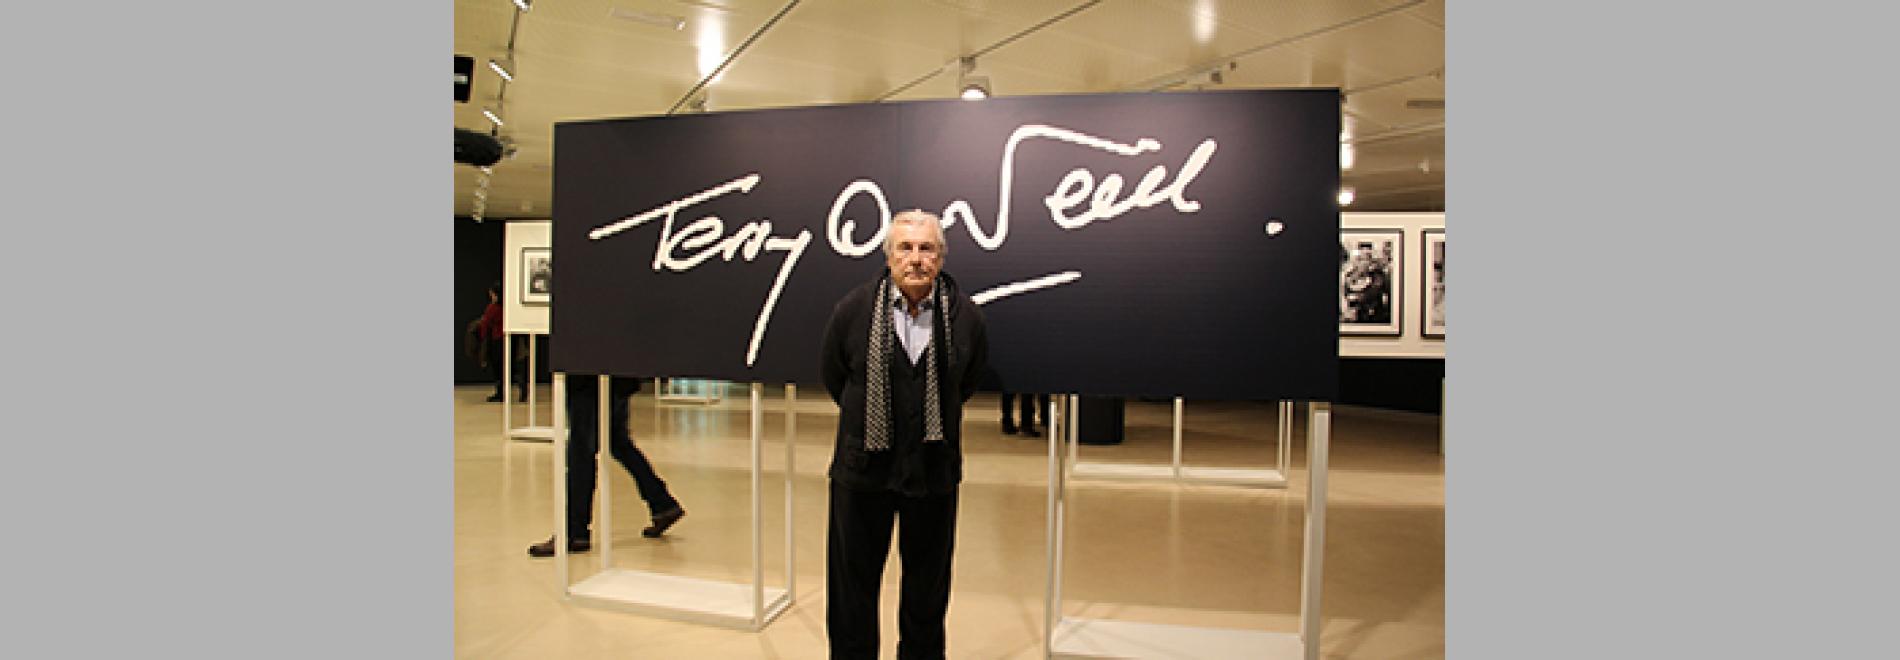 Terry O'Neill davant la seva signatura a l'exposició